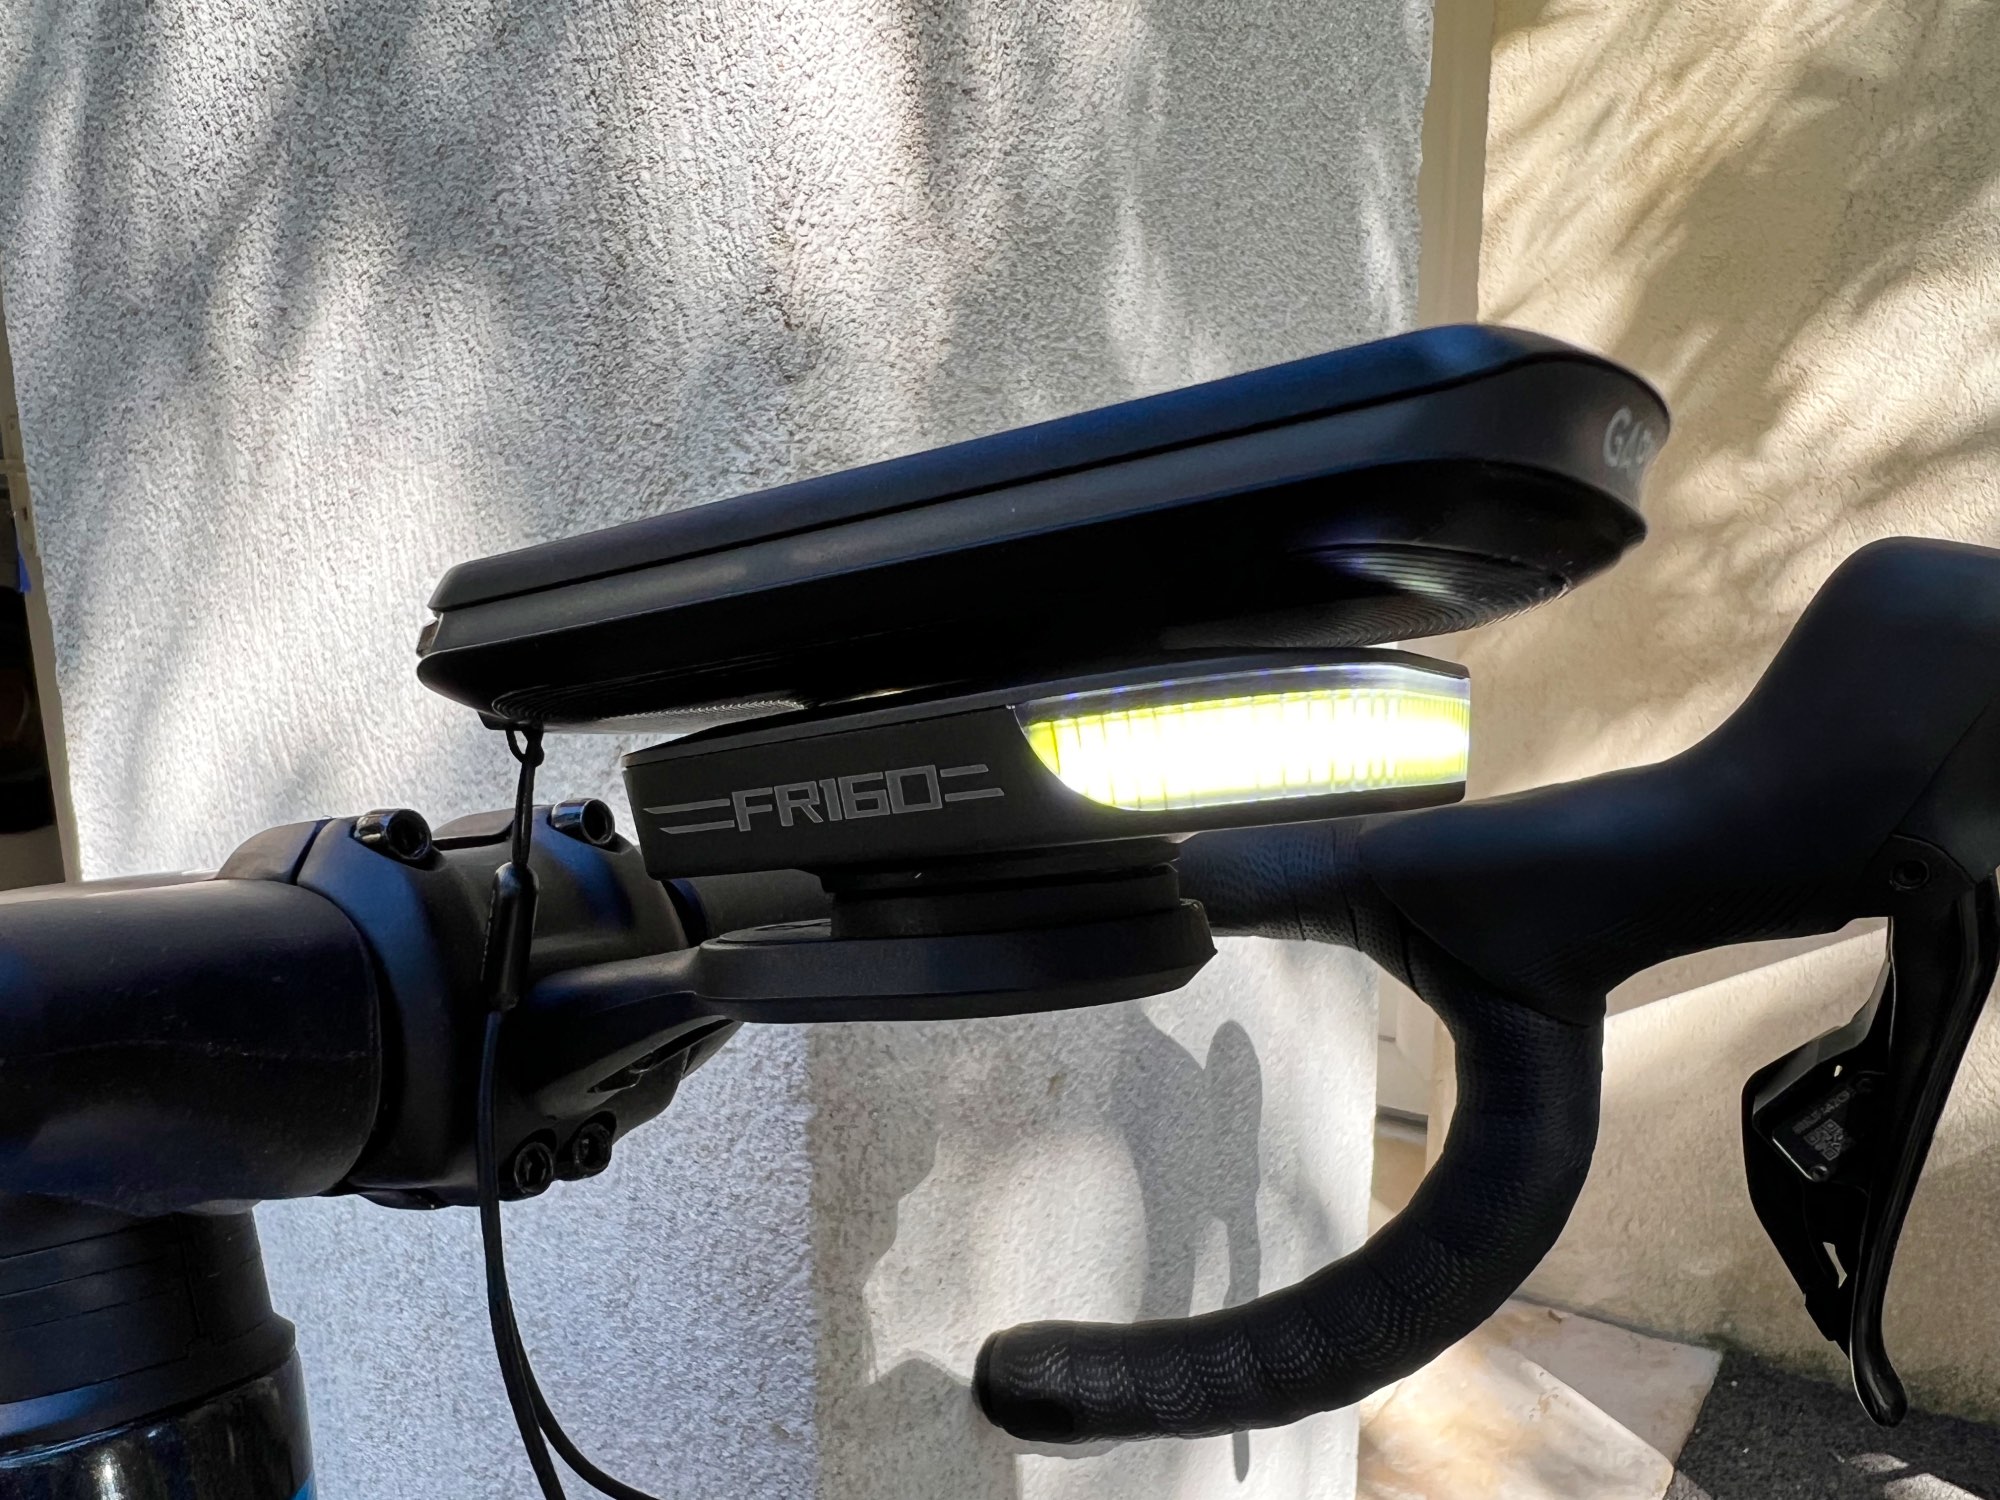 Éclairage vélo avant Ravemen FR 160 avec fixation compteur Garmin